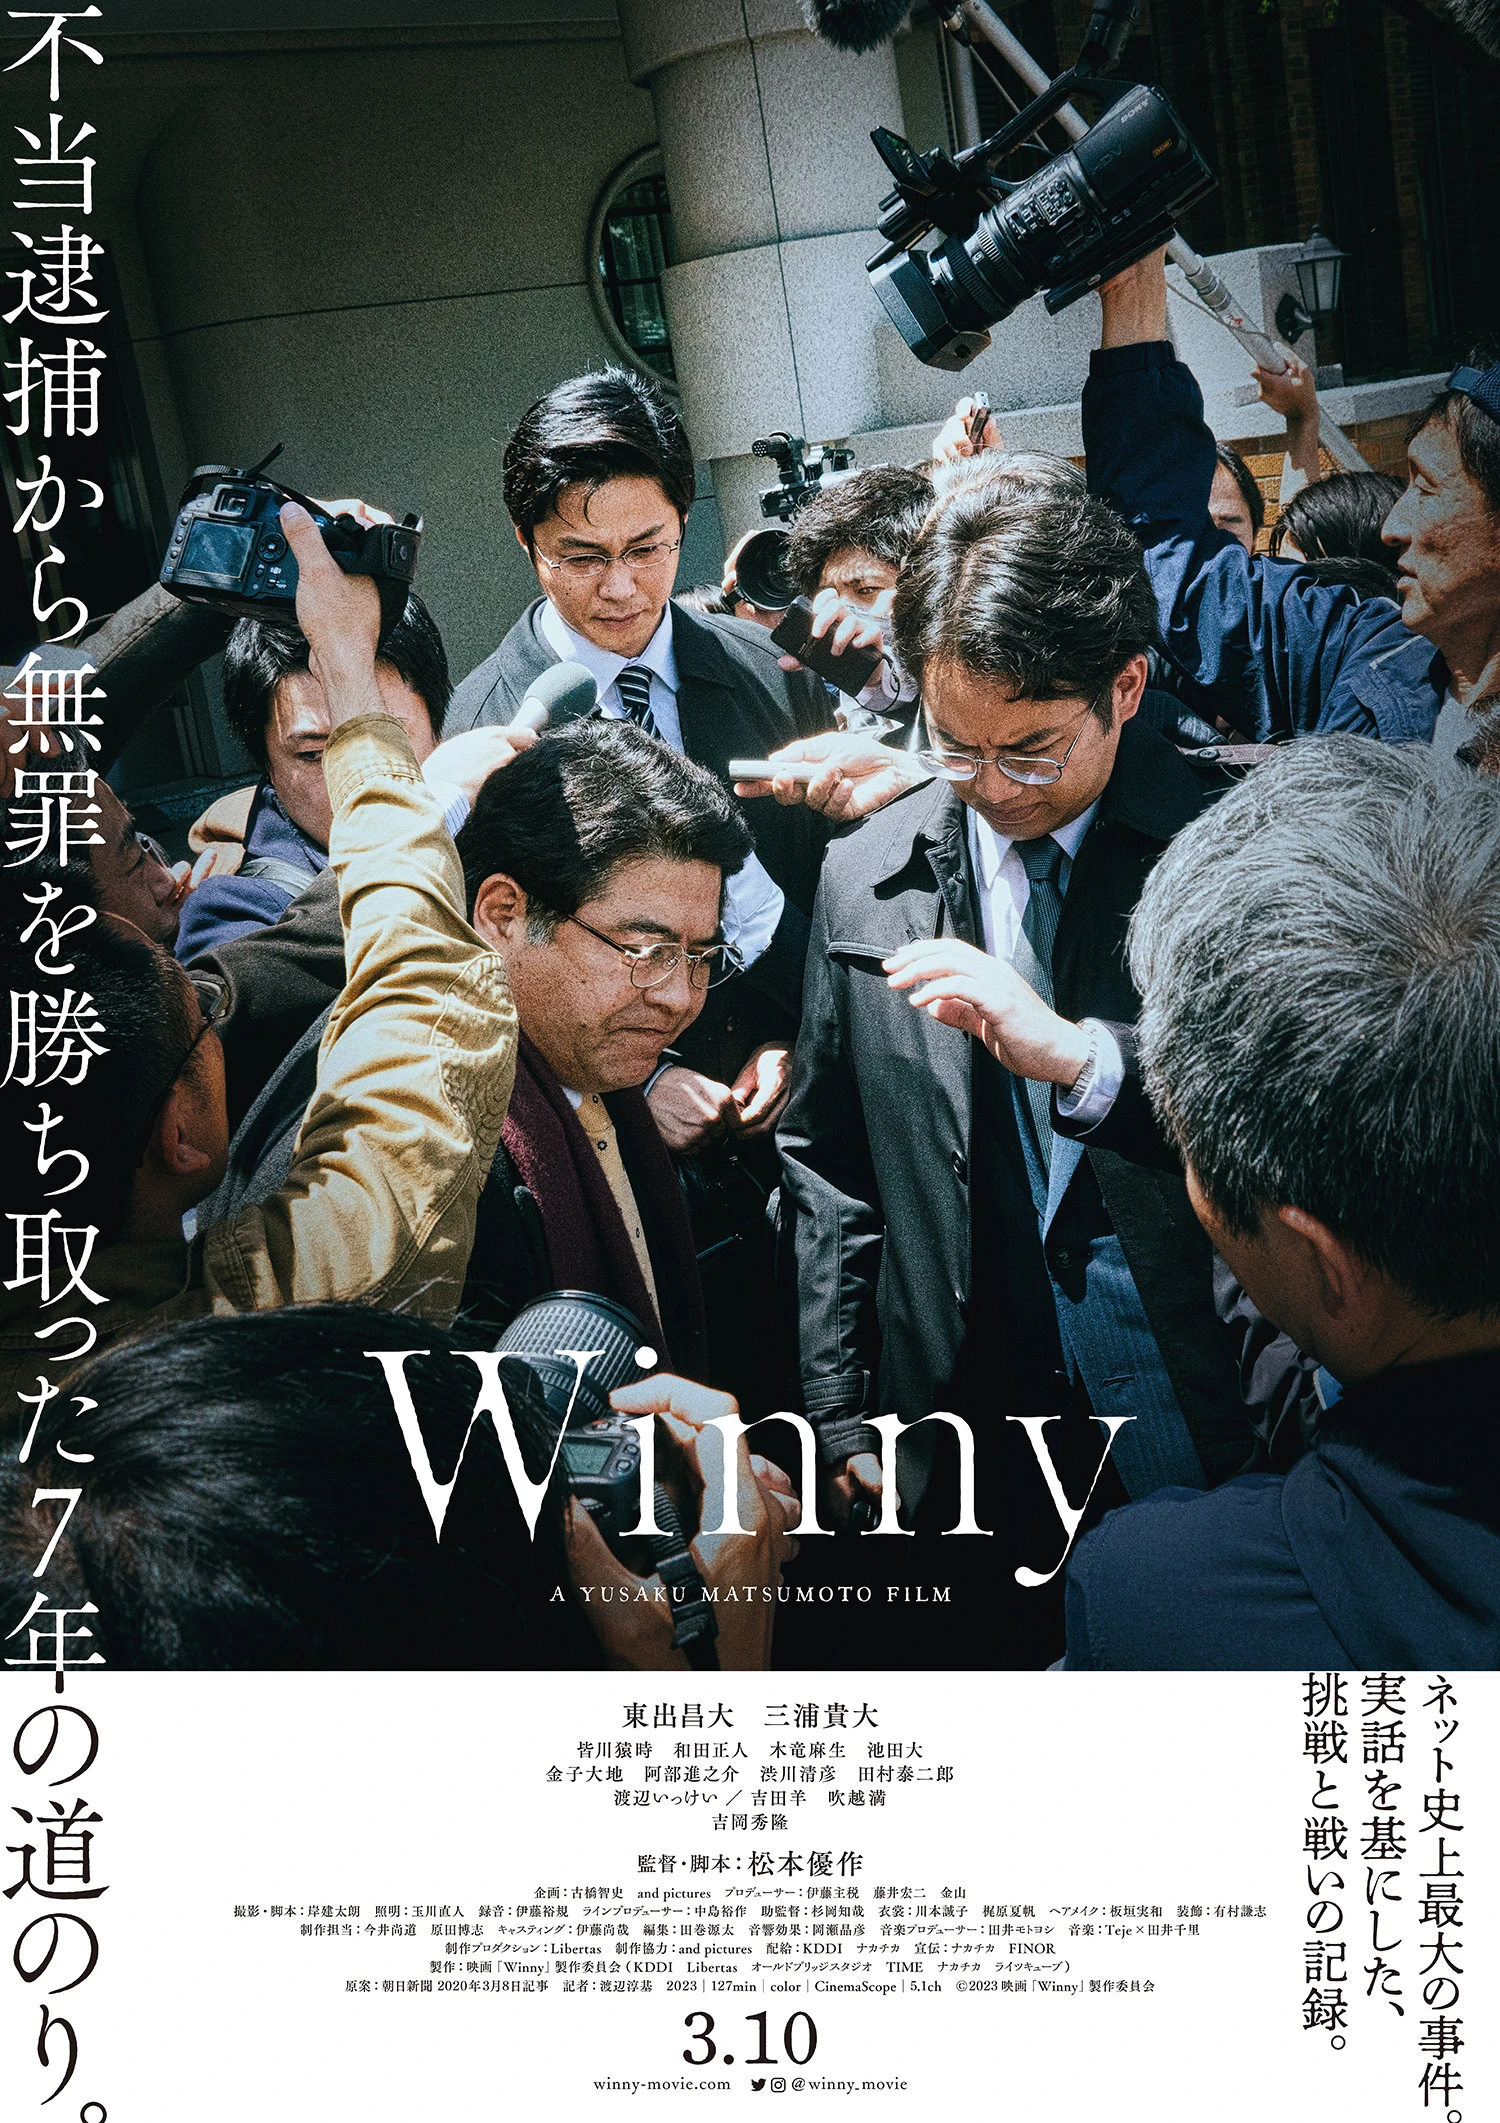 映画『Winny』本予告解禁　ネット史上最大の事件を描く意欲作